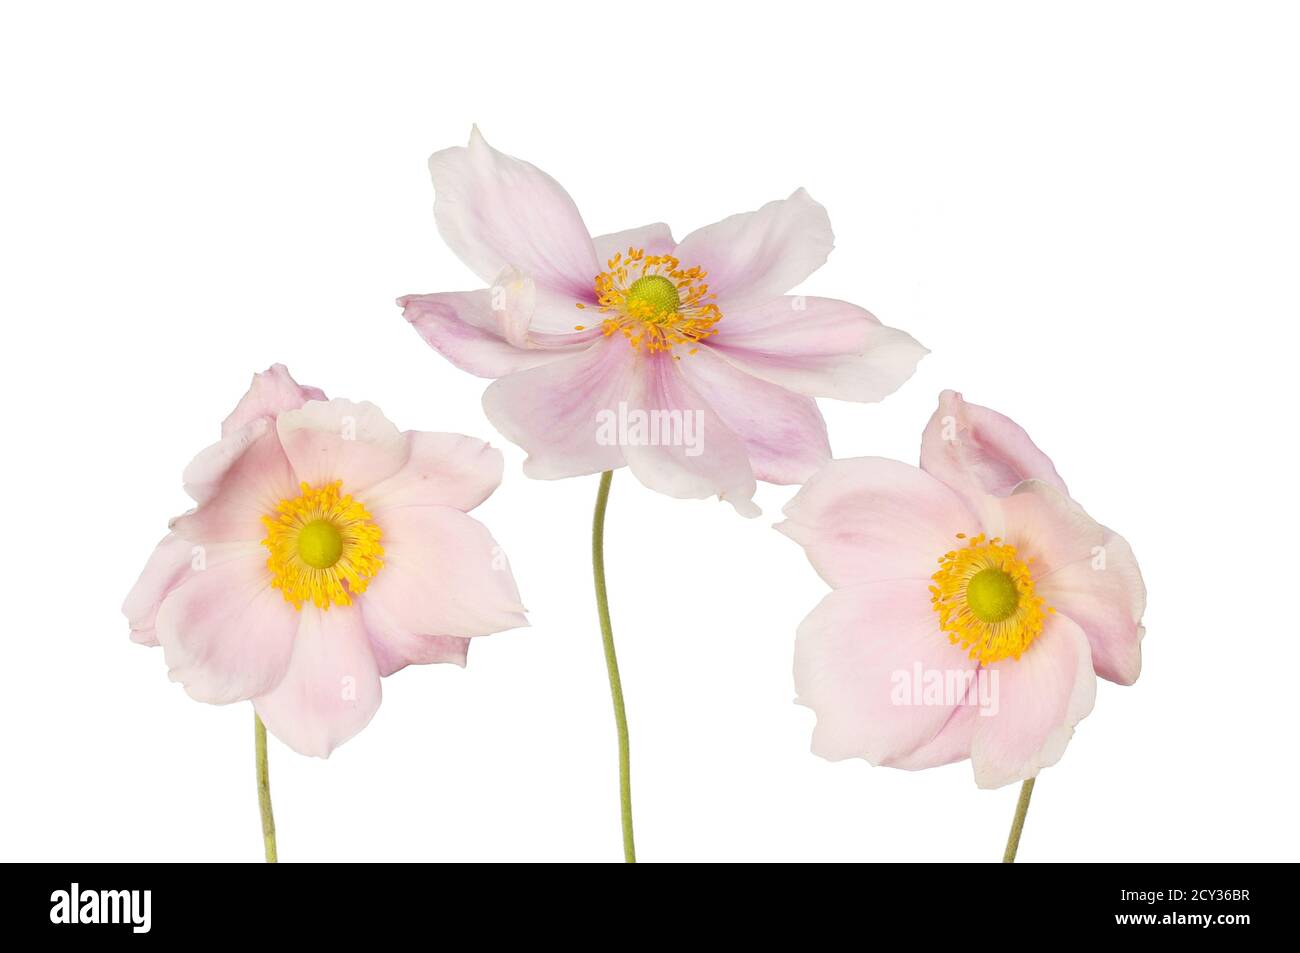 Trois fleurs d'anémone isolées contre du blanc Banque D'Images